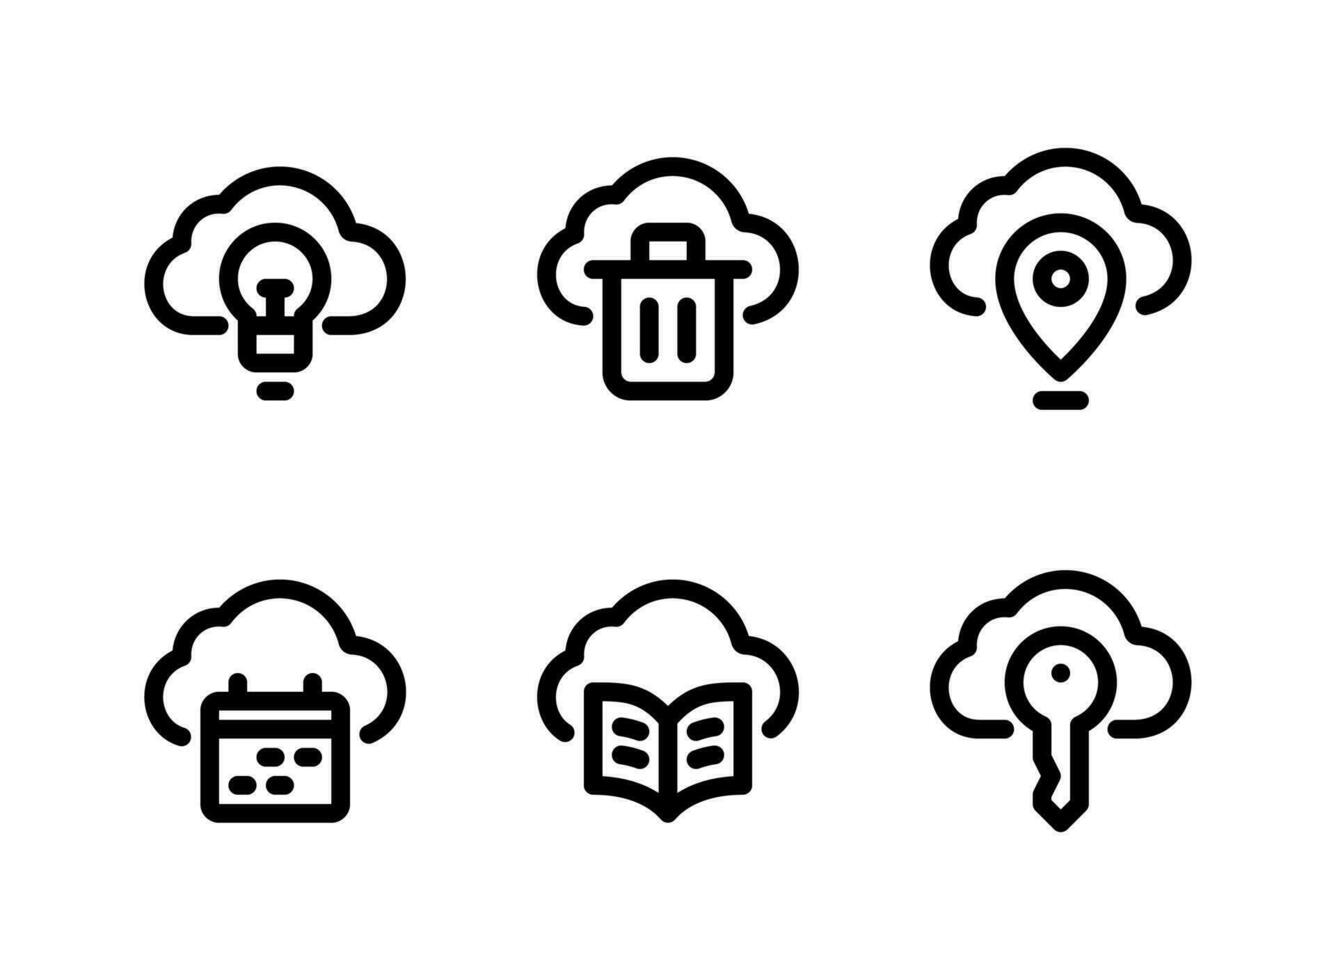 ensemble simple d'icônes de lignes vectorielles liées au cloud computing. contient des icônes comme idée, corbeille, emplacement et plus encore. vecteur